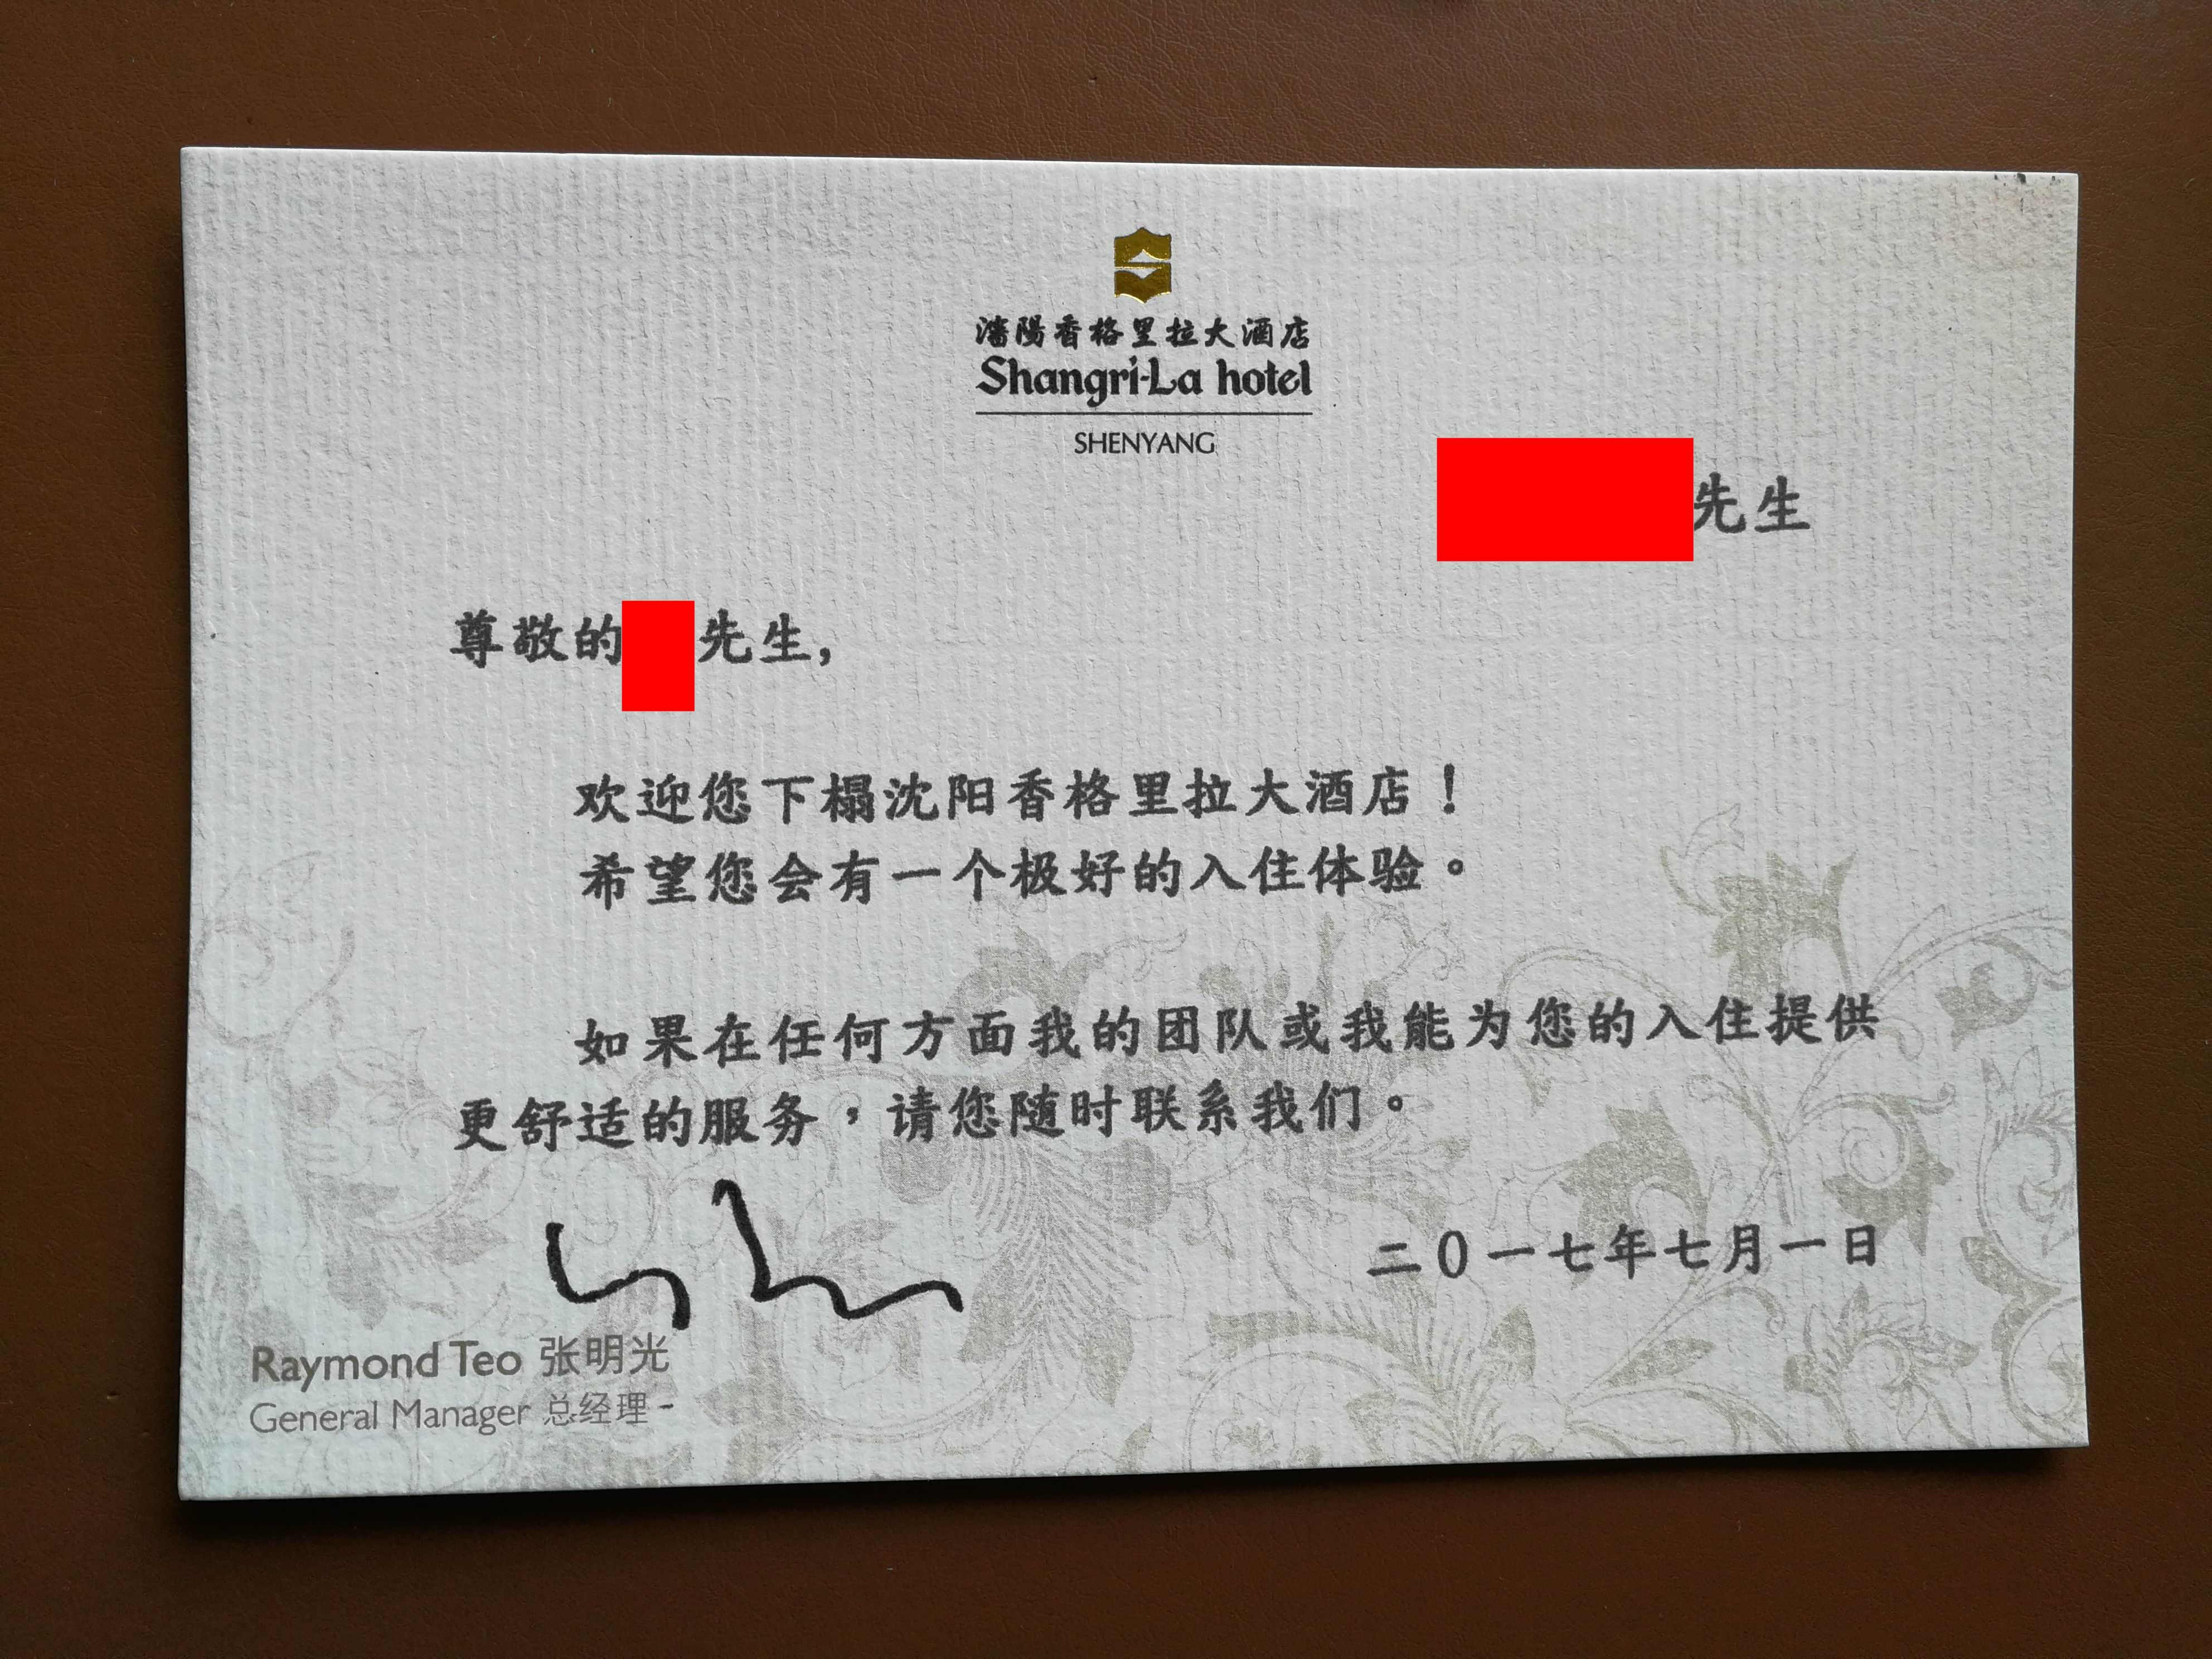 欢迎水果送到,欢迎卡是打印的